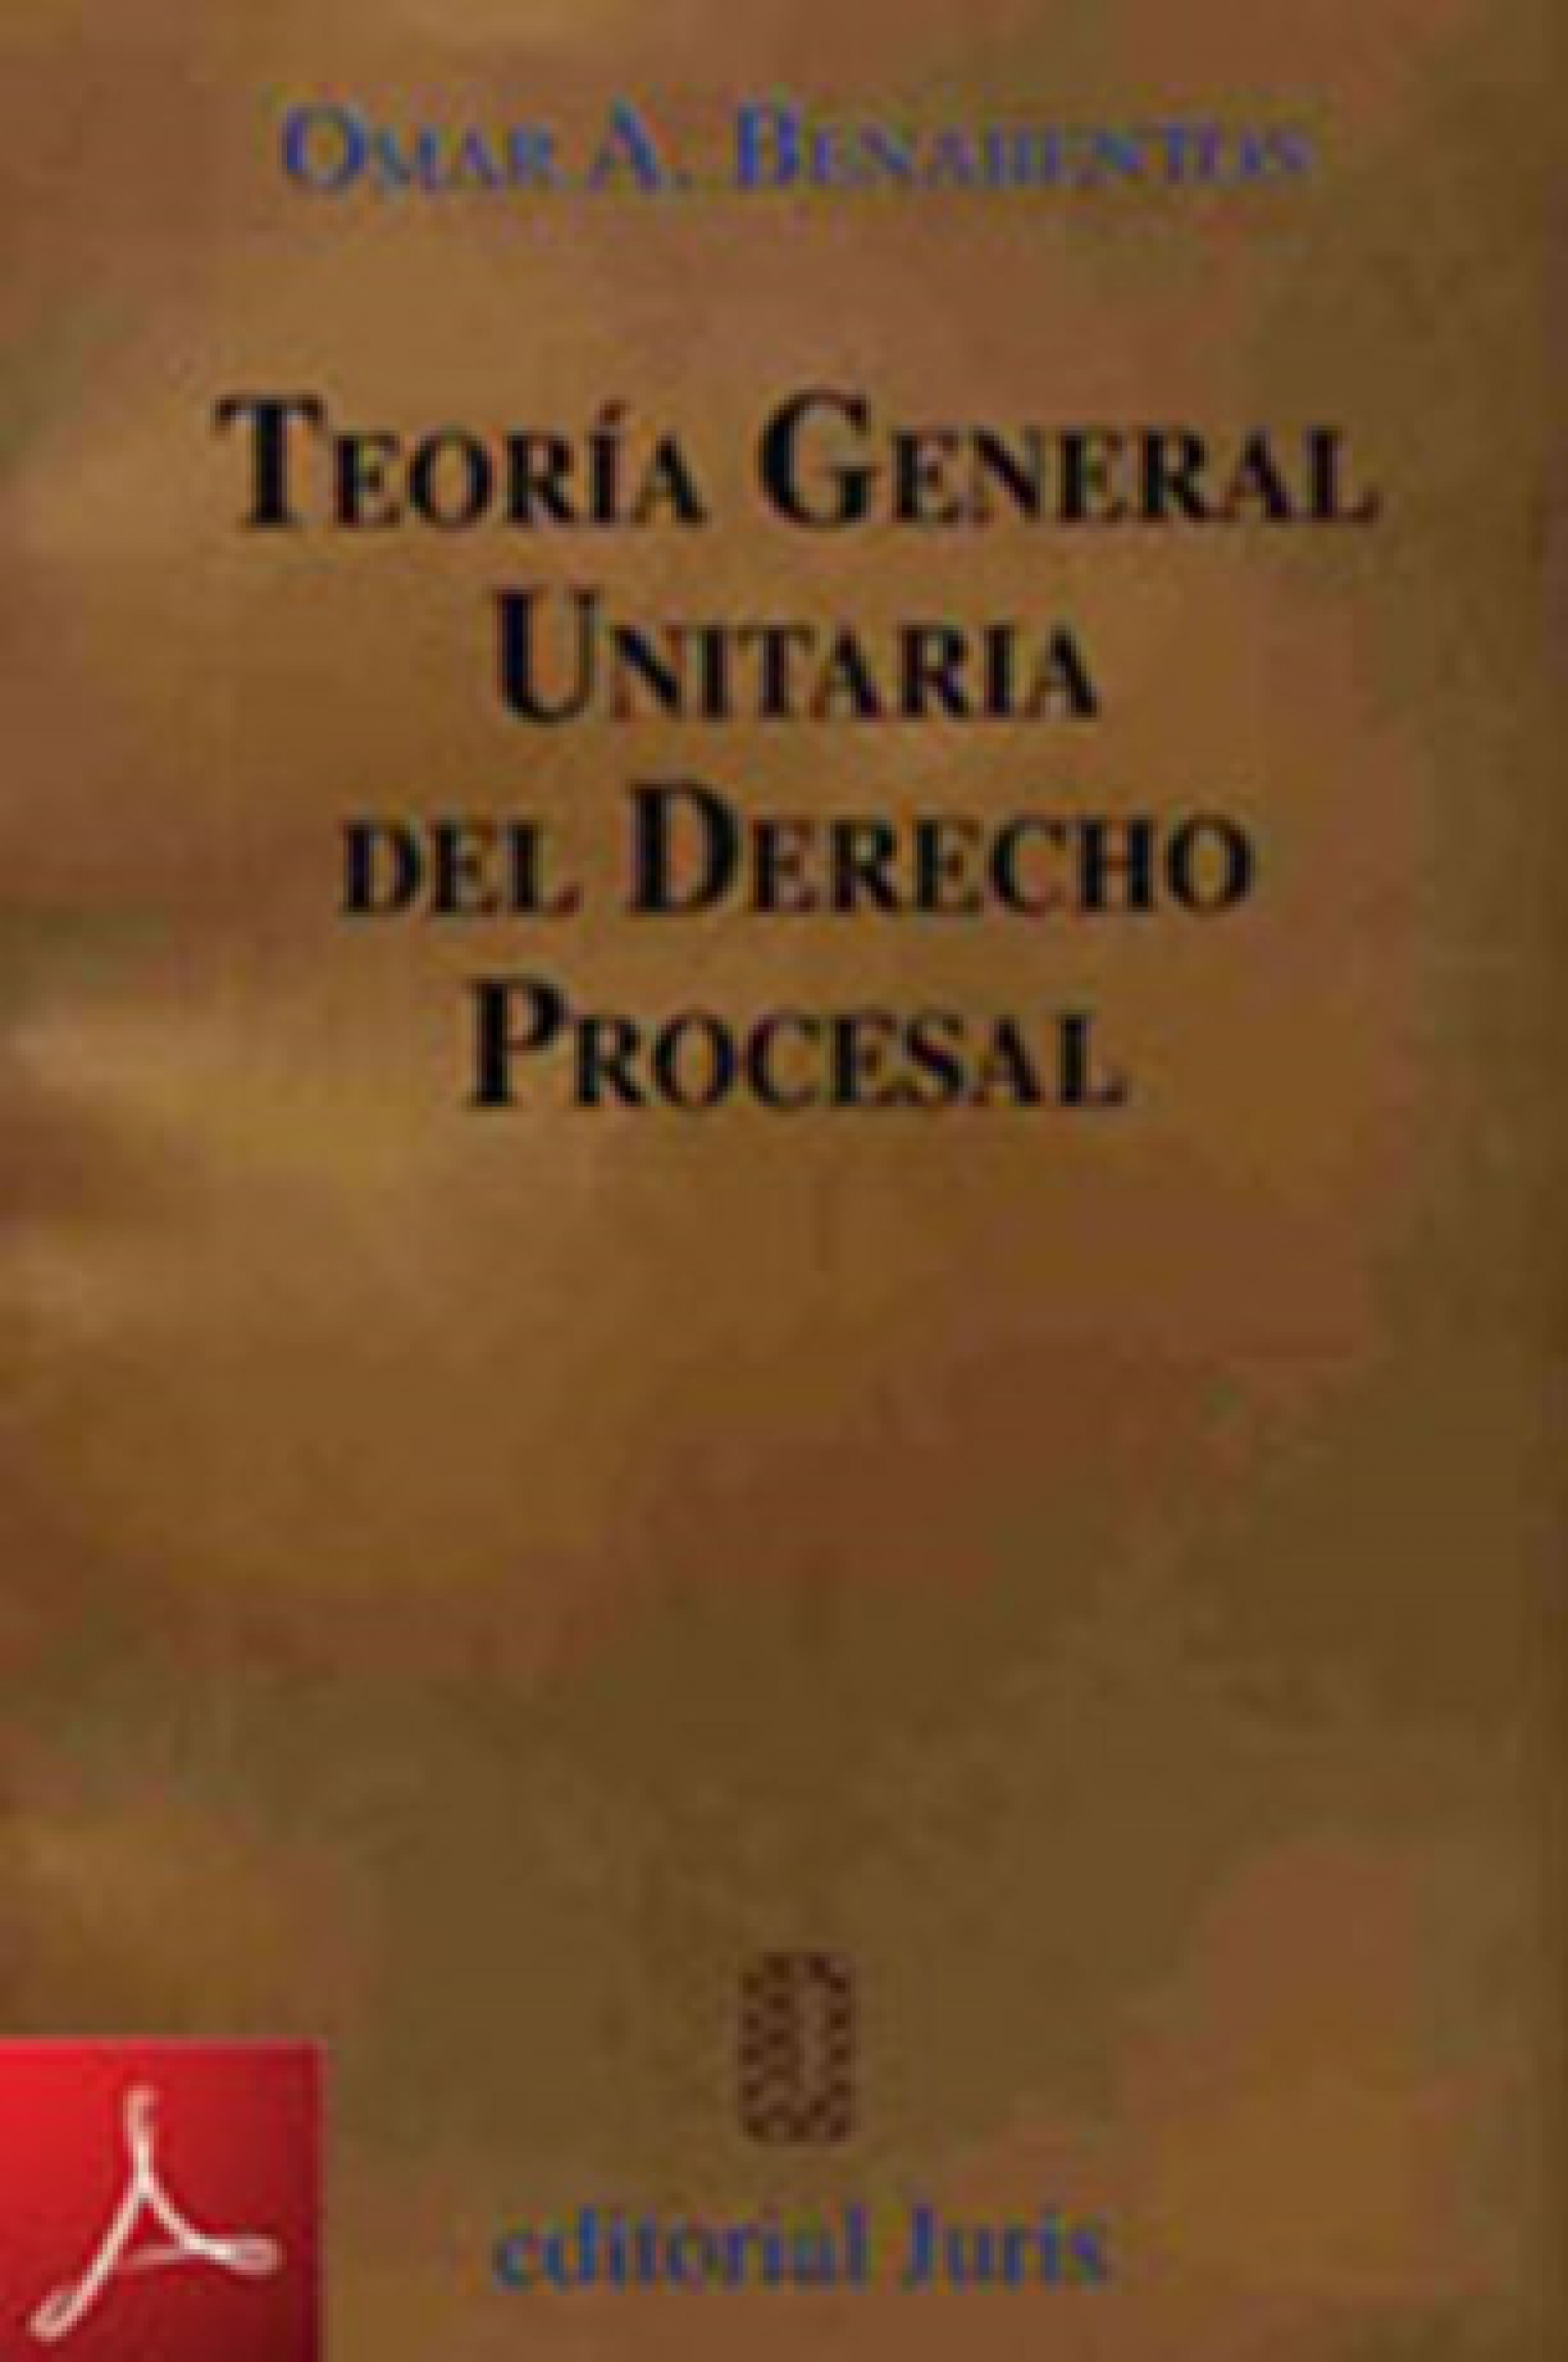 Teoría General Unitaria del Derecho Procesal